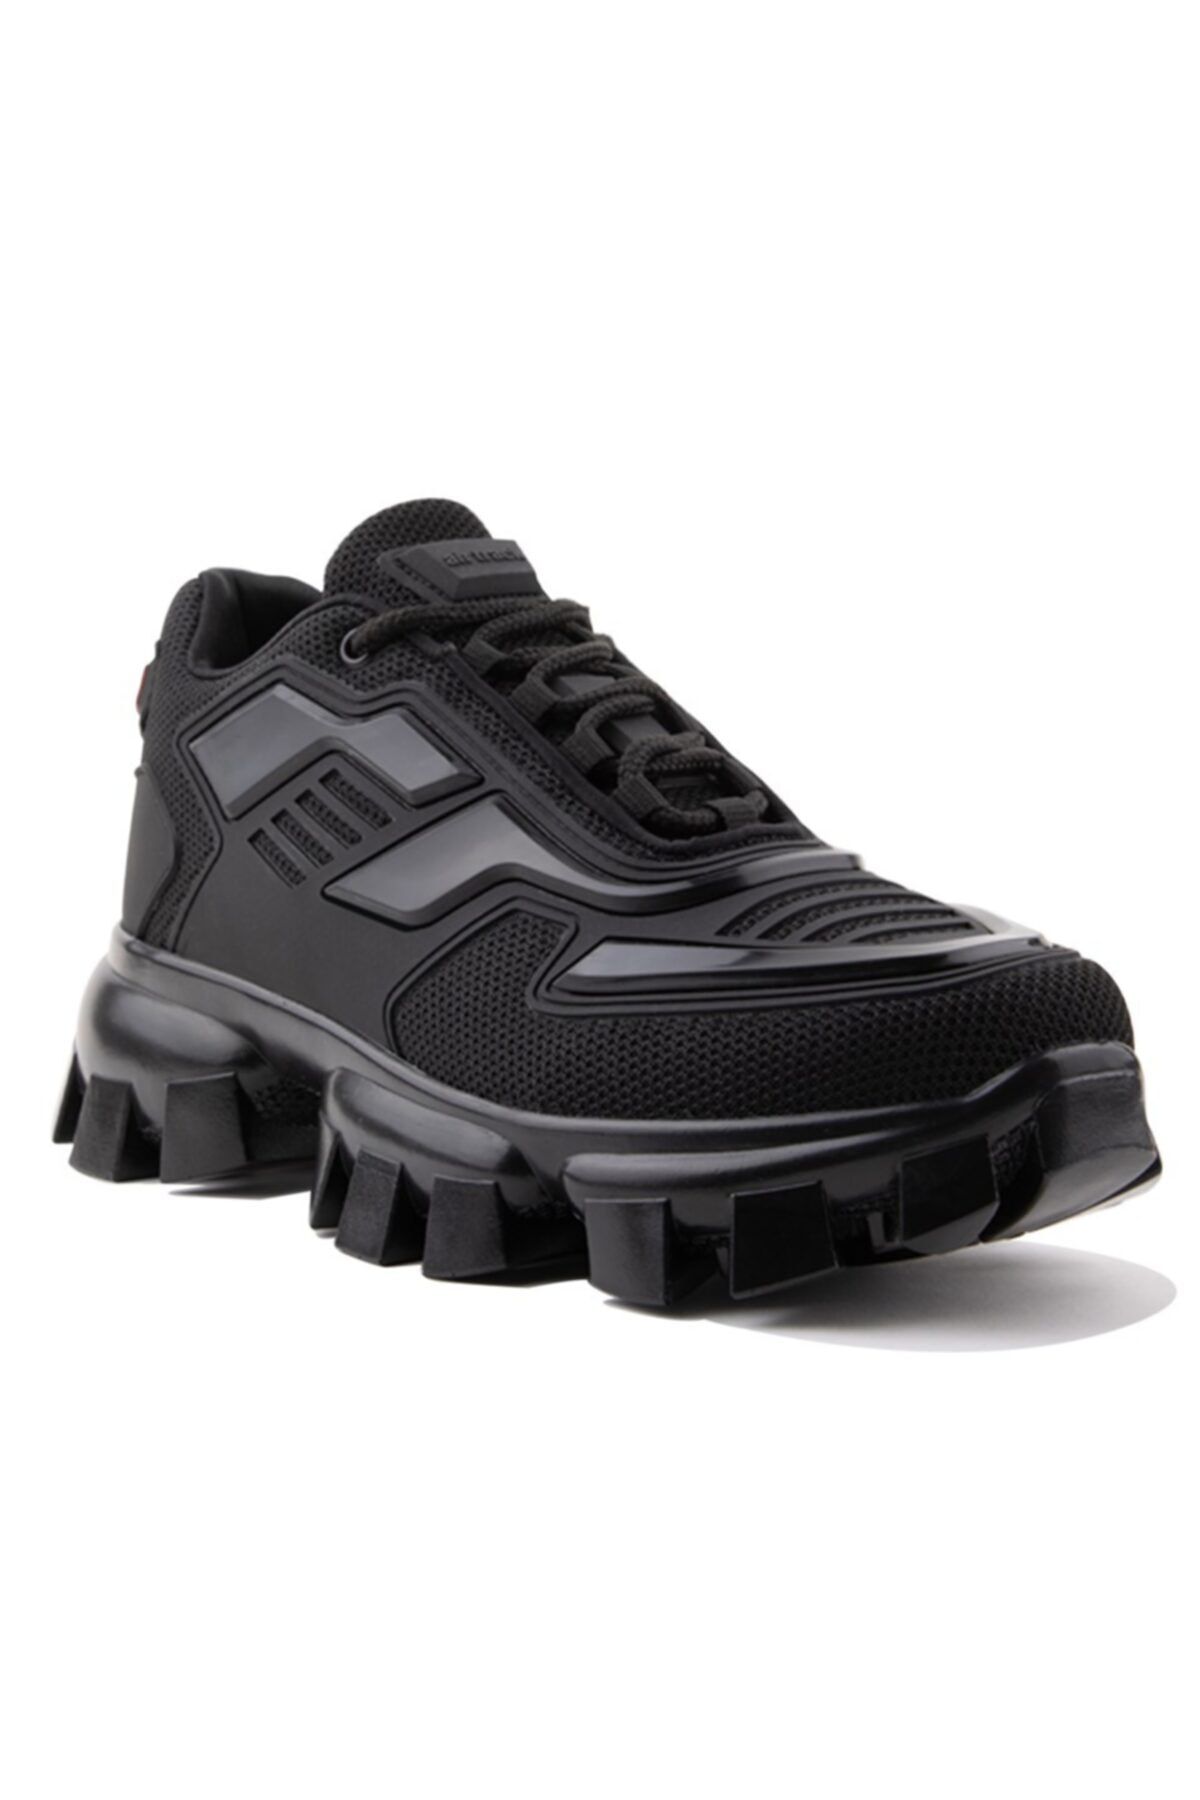 AIRTRACK Unisex Siyah Yüksek Tabanlı Sneaker Kalın Taban Günlük Ayakkabı-dar Kalıptır